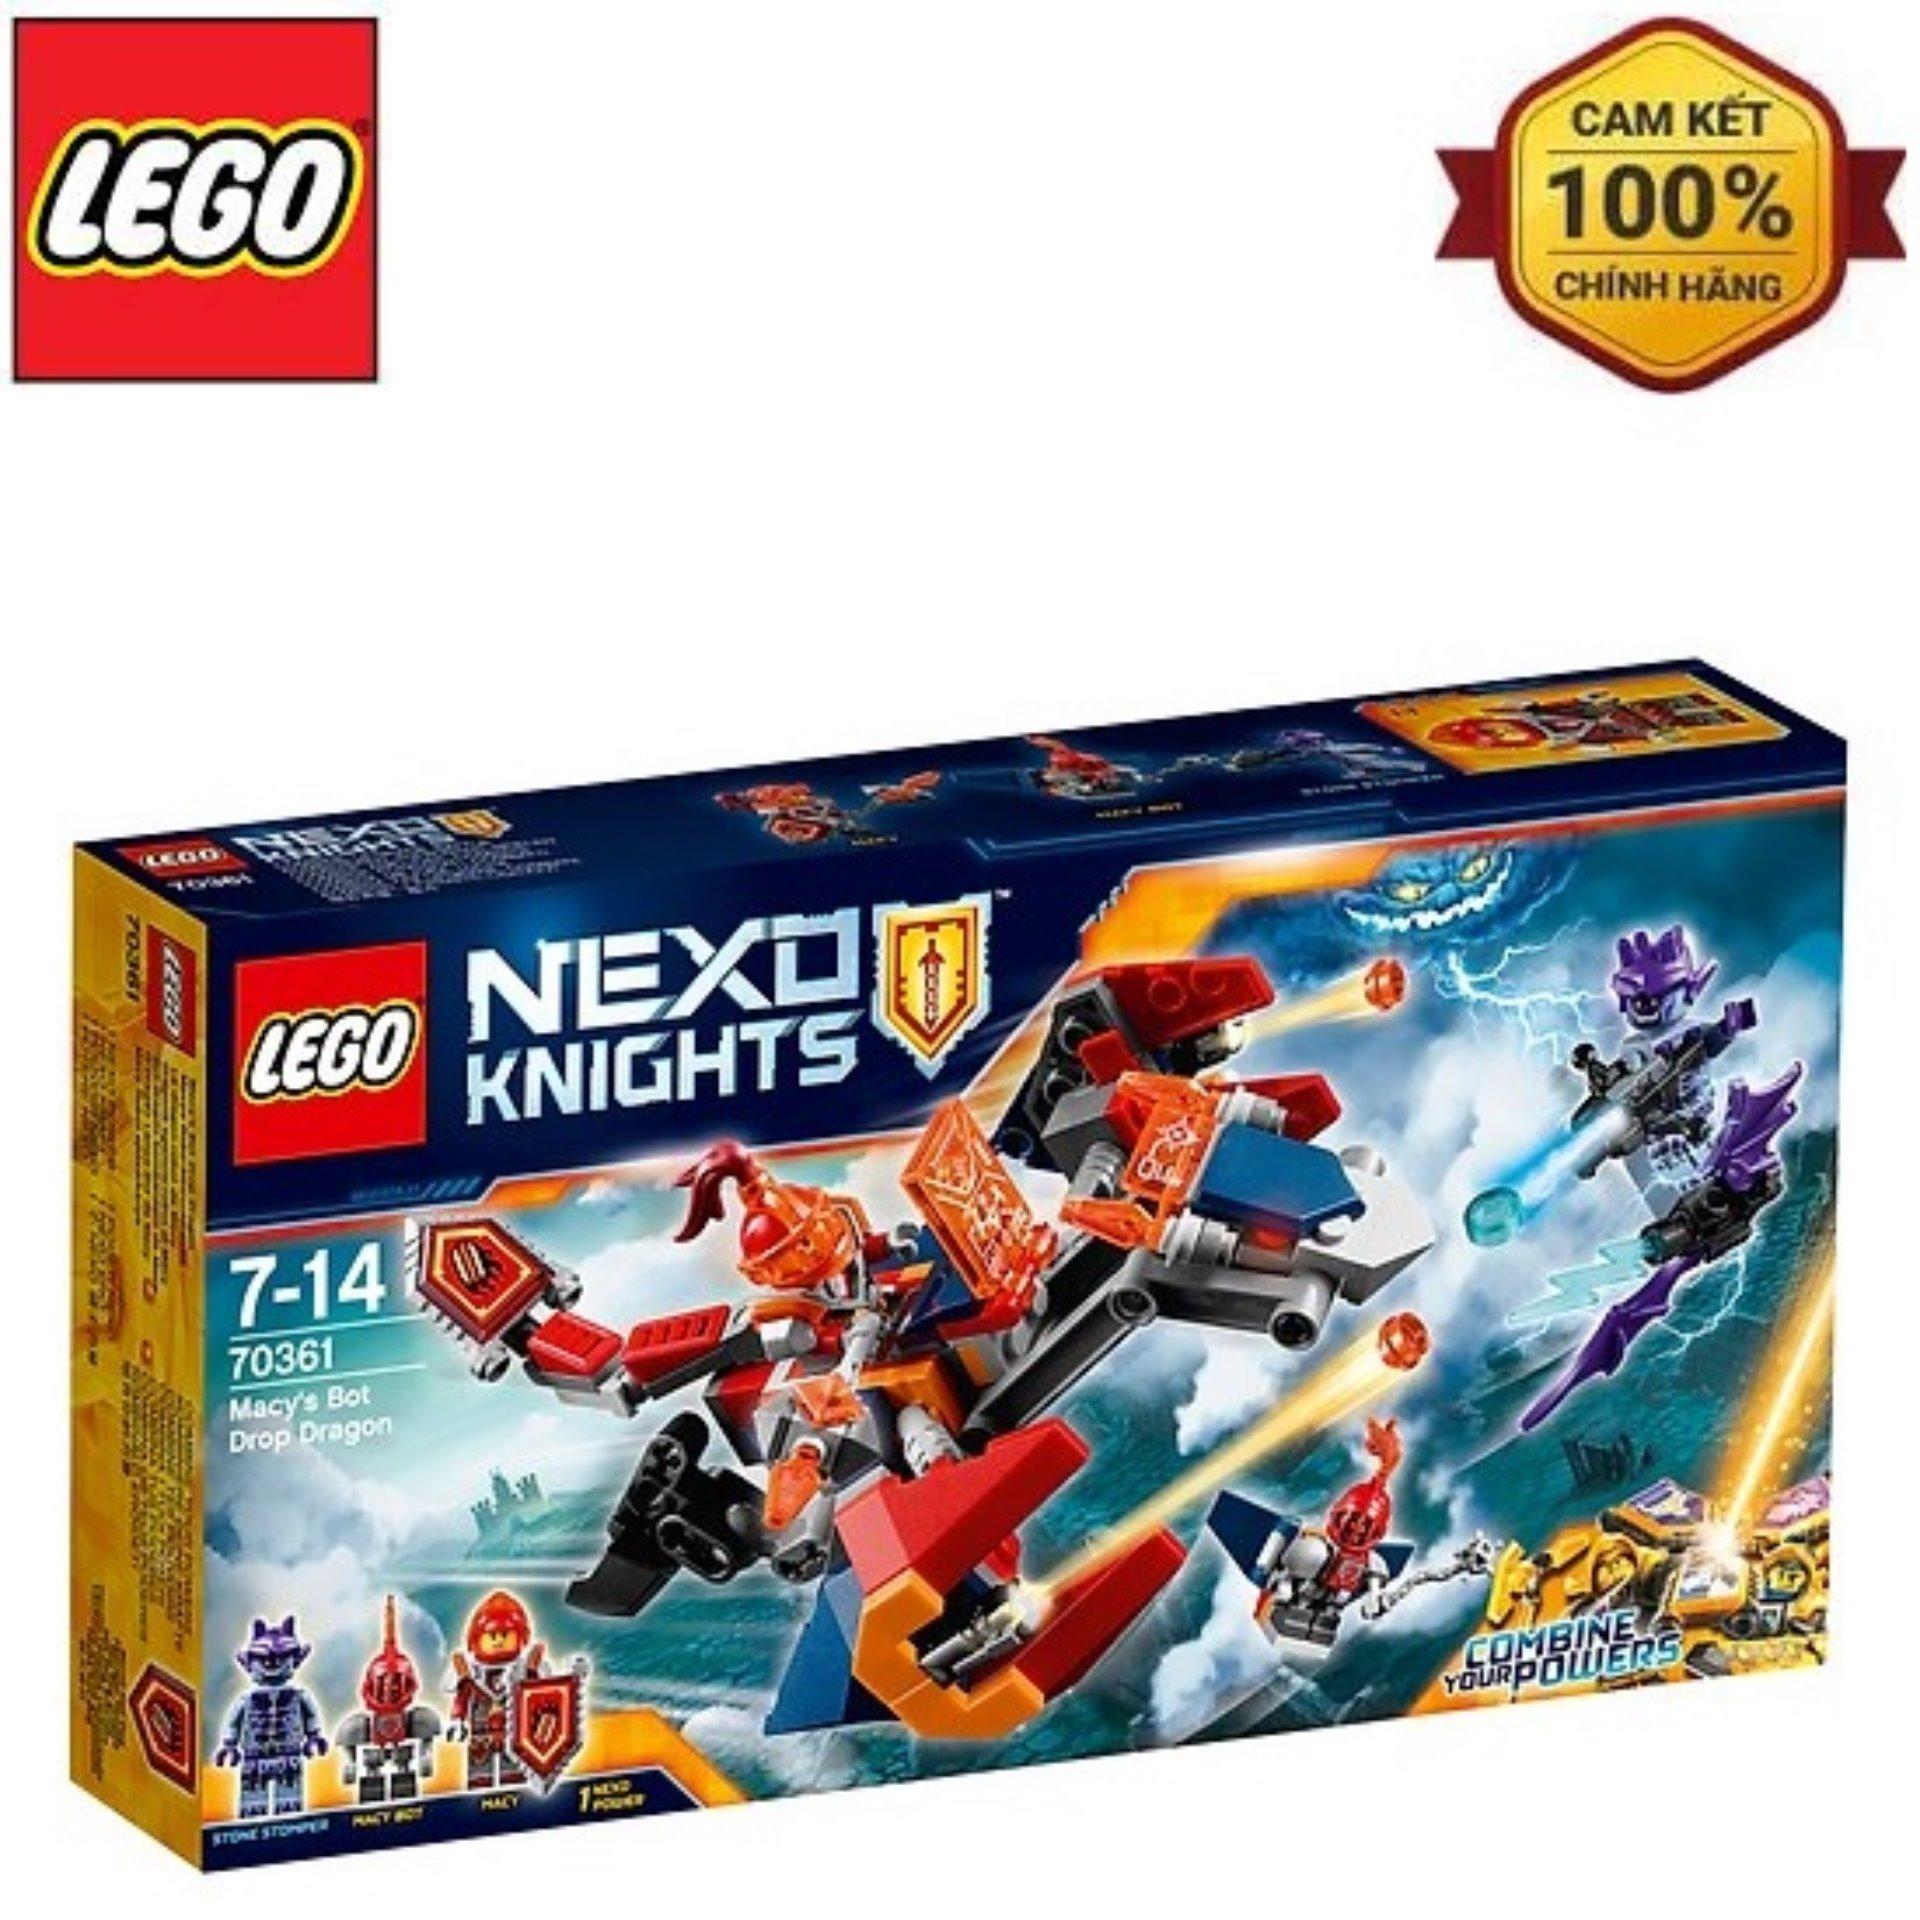 Bộ Đồ Chơi Lego Rồng Bay Máy Của Macy 70361 giá rẻ 539.000₫